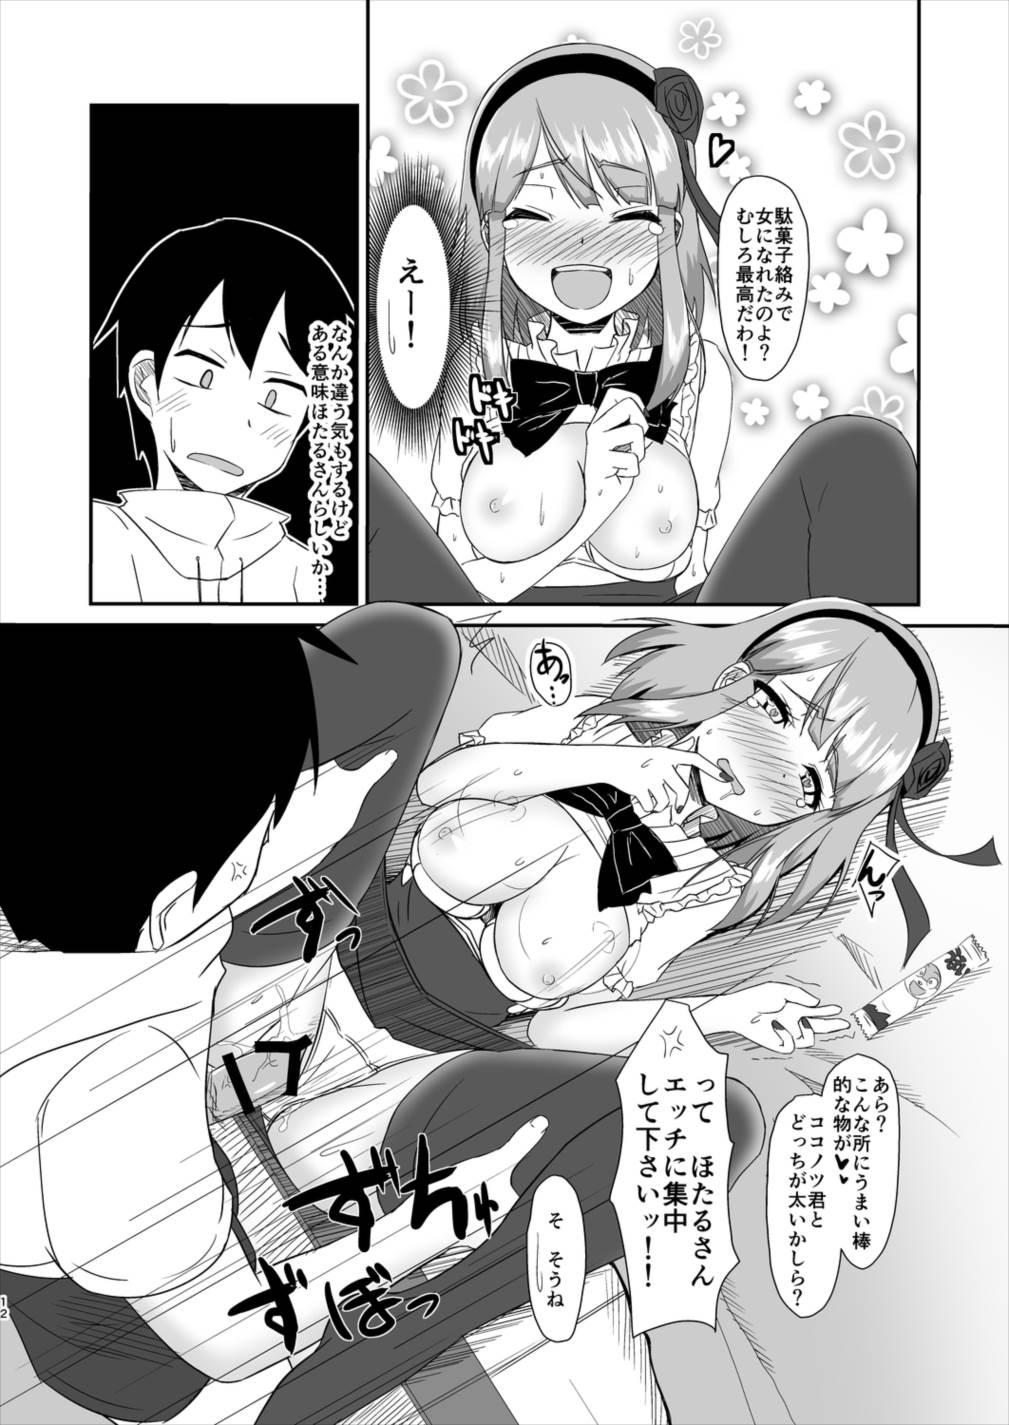 Porn Star Hotarukashi - Dagashi kashi Inked - Page 11